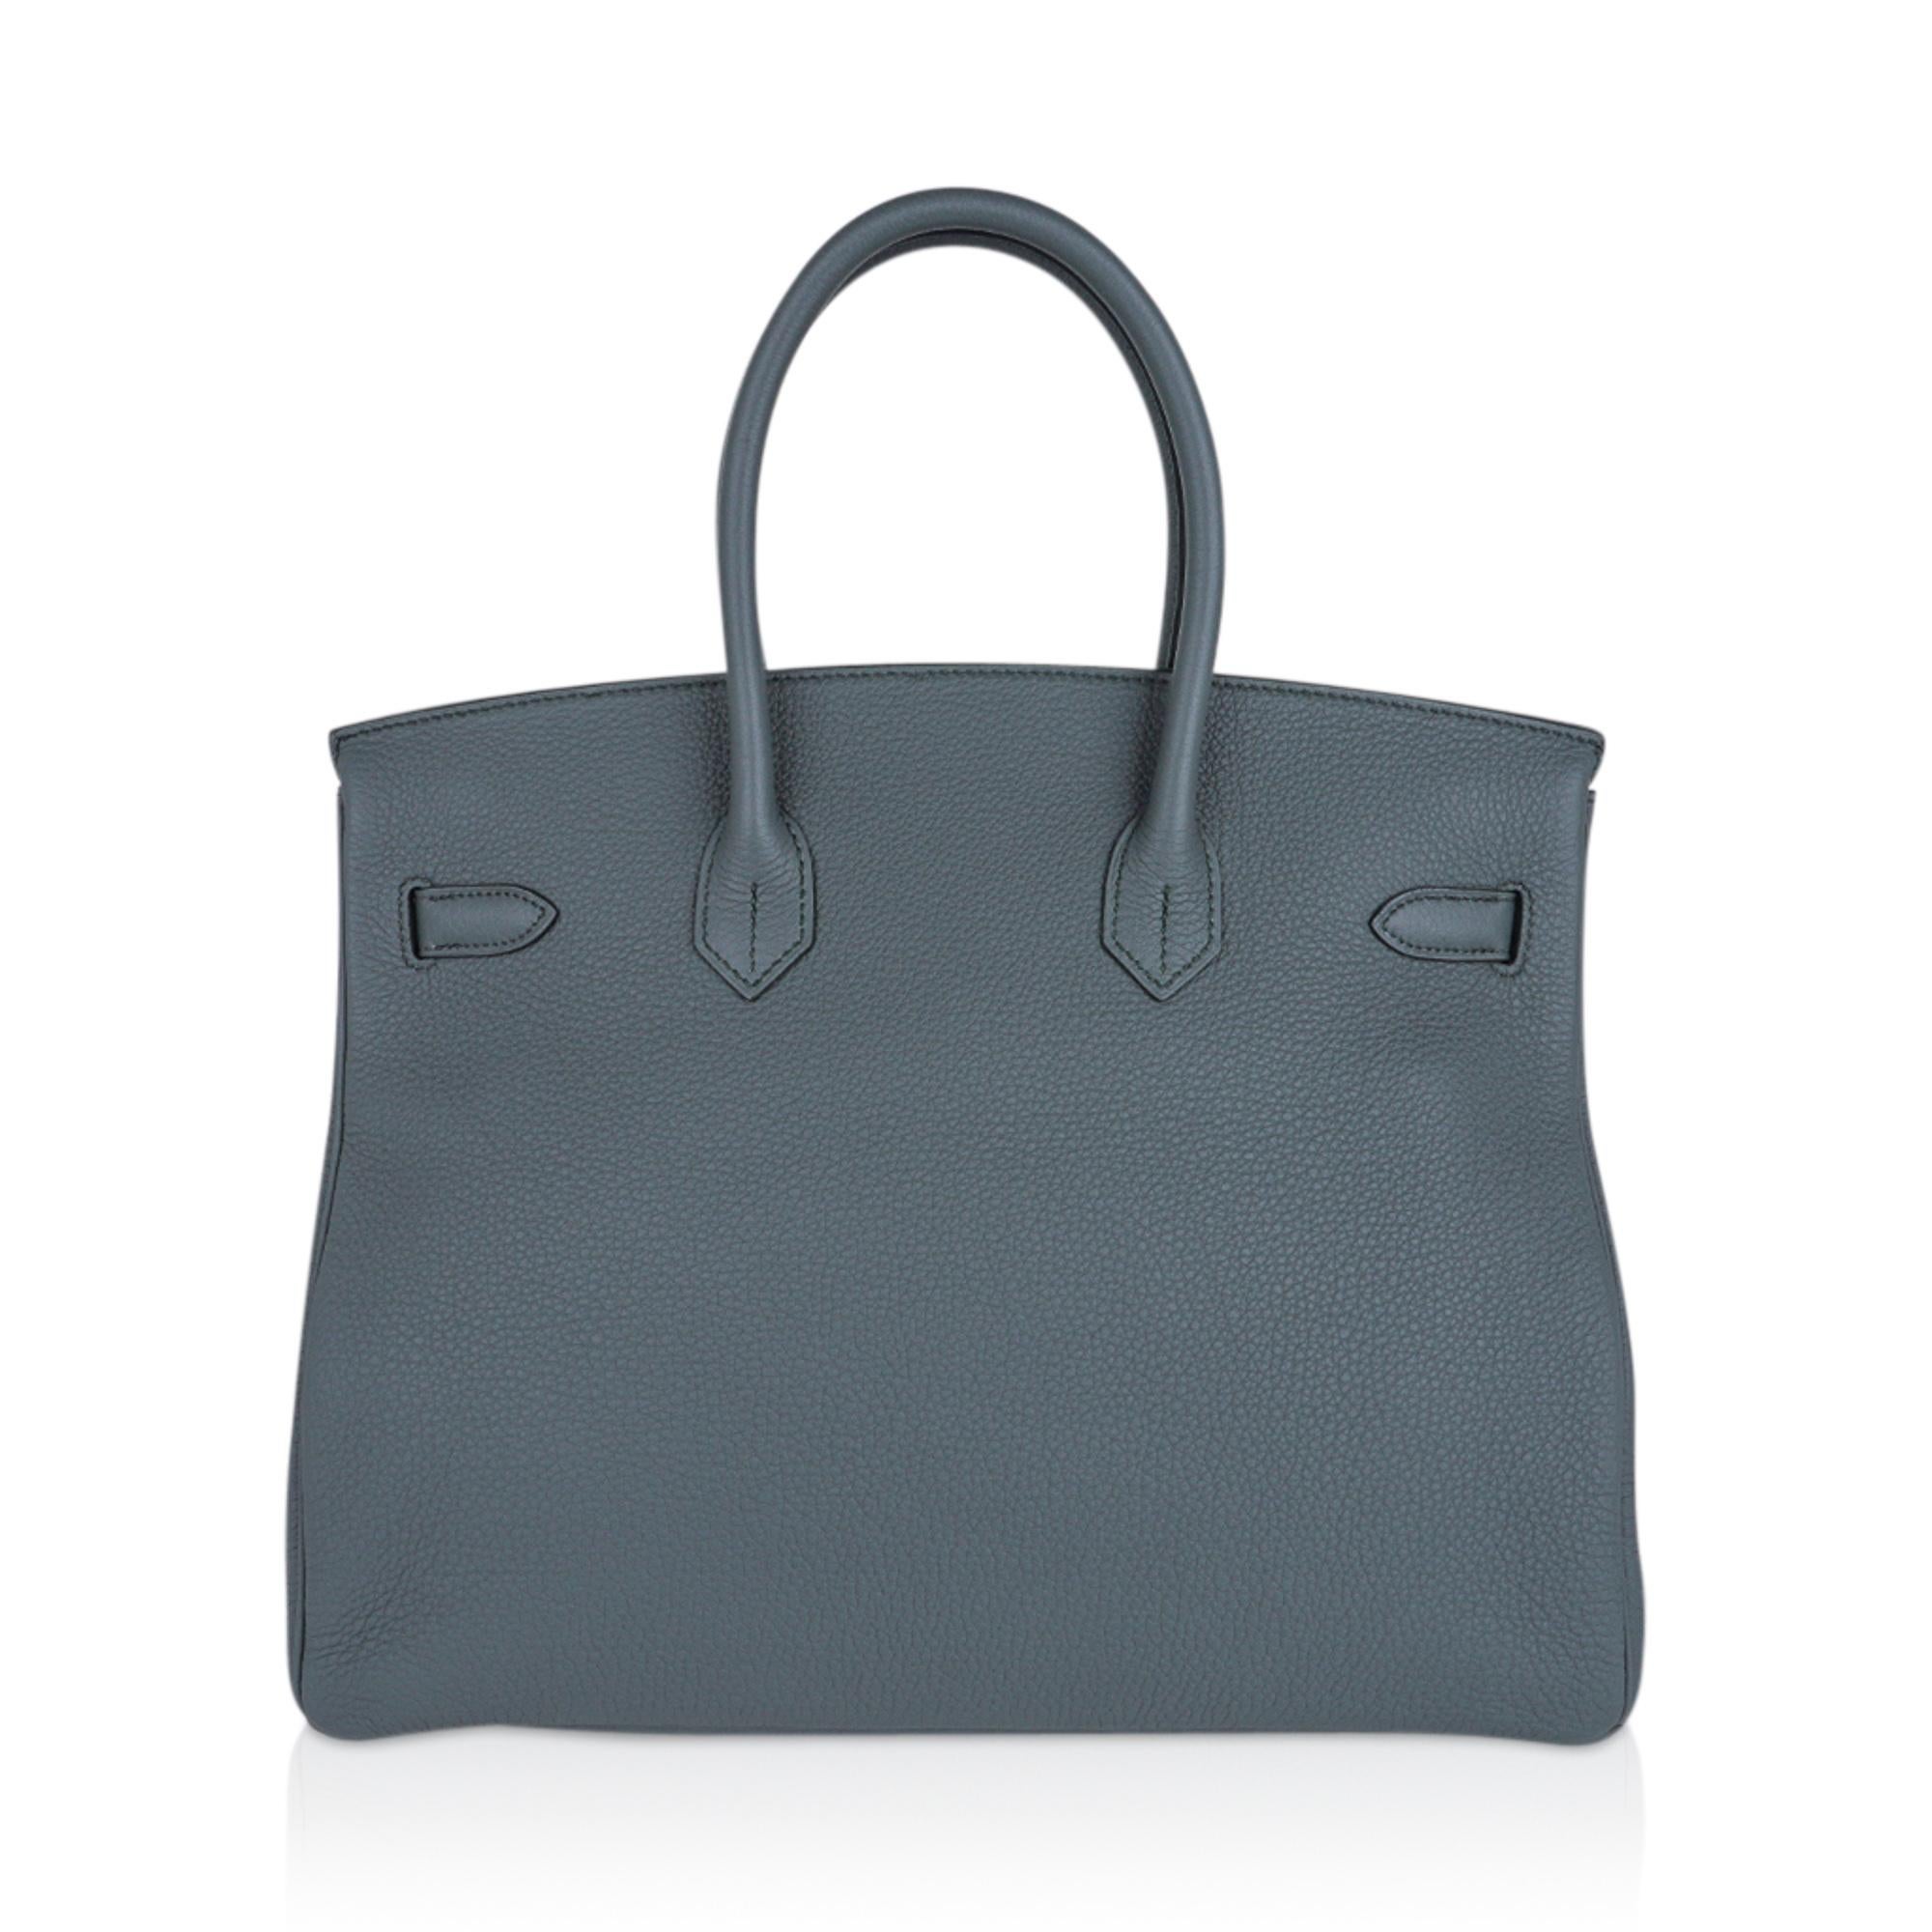 Hermes Birkin 35 Bag Vert Amande Palladium Hardware Togo Leather In New Condition For Sale In Miami, FL